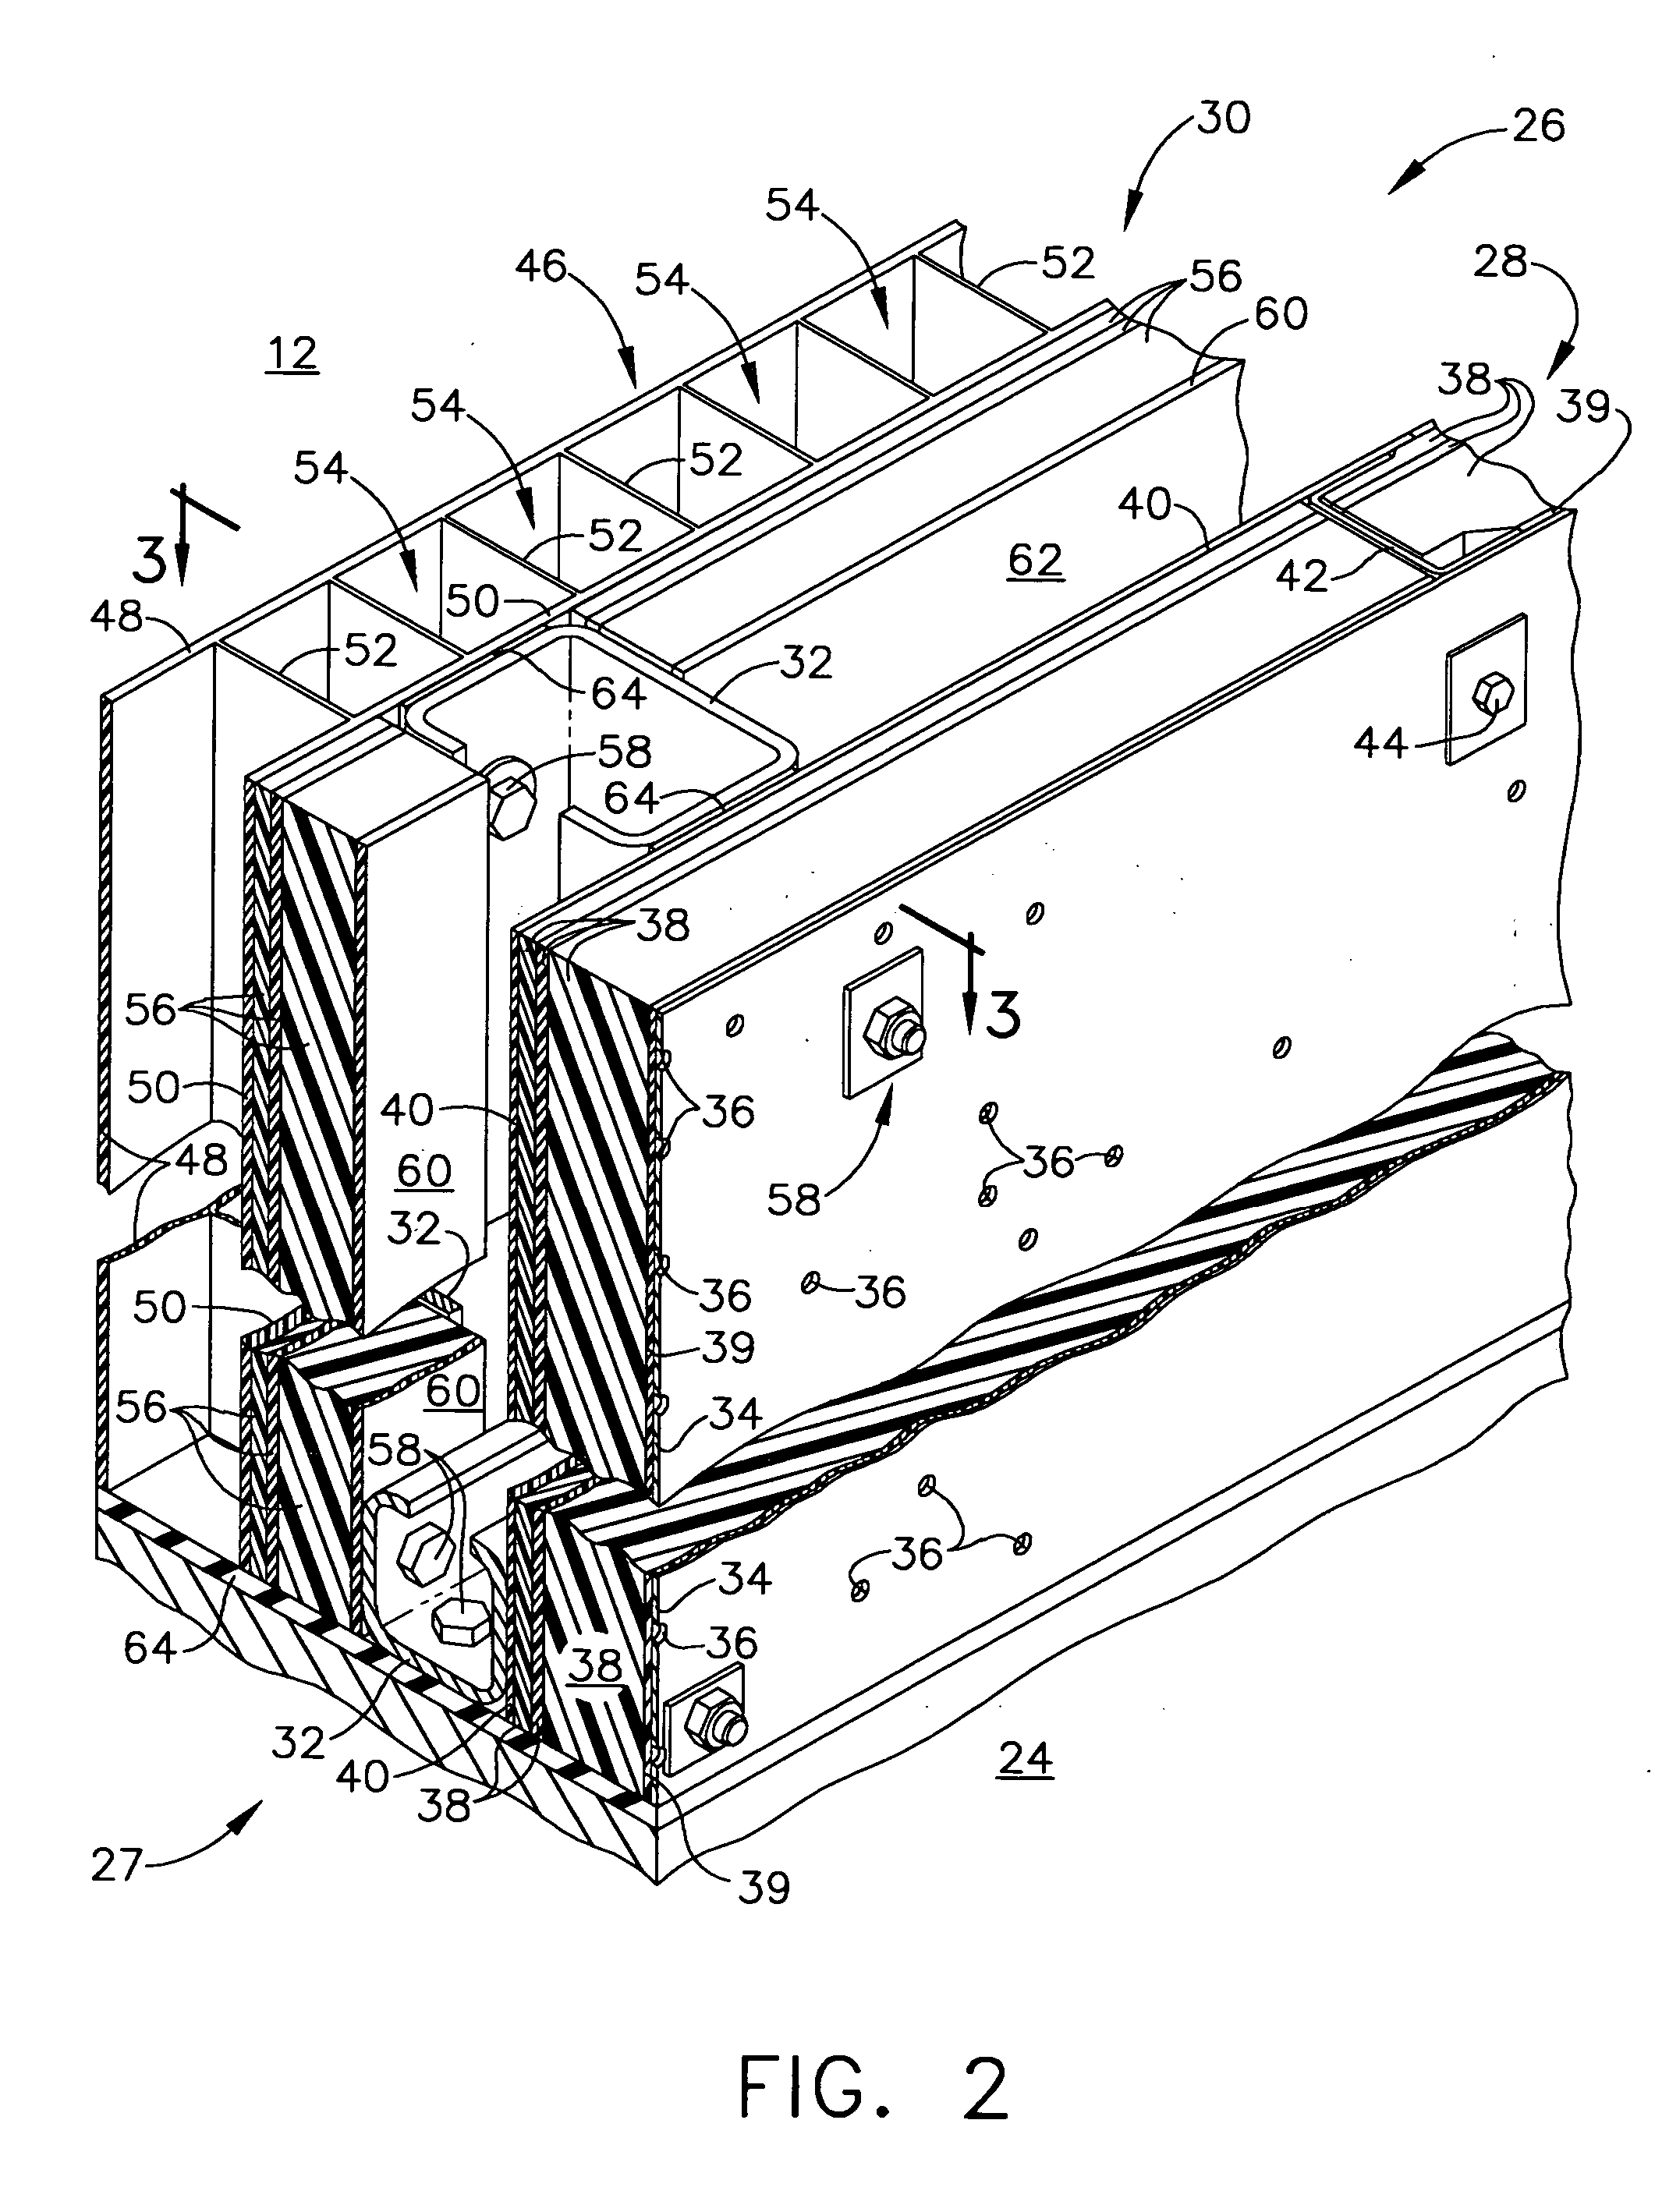 Thermal - acoustic enclosure